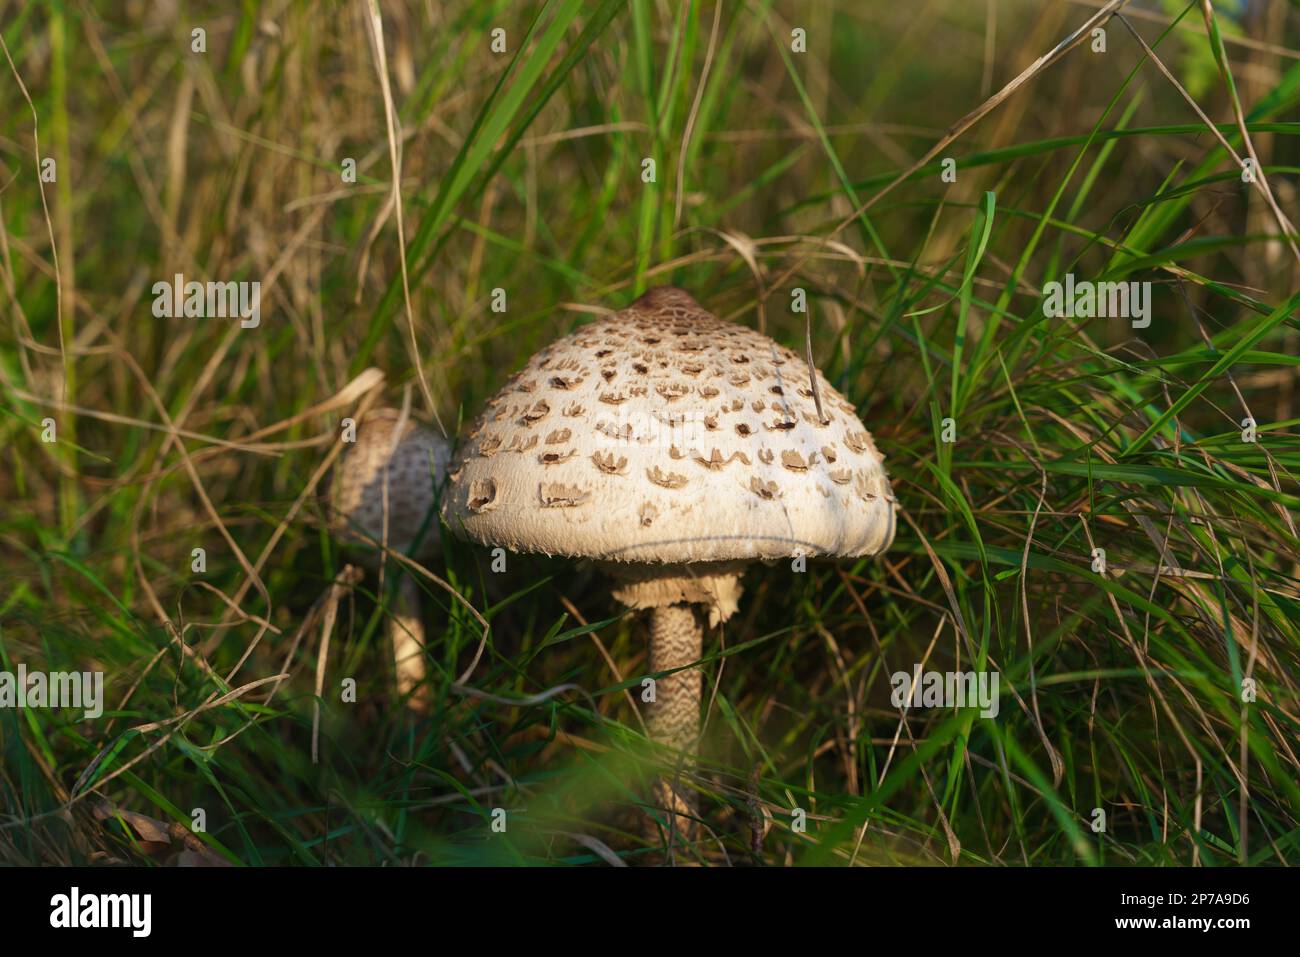 (Macrolepiota procera), Pilze, die am Waldrand in Gräsern wachsen. Pilzsammeln, essbare Pilze im Wald sammeln. Polen Stockfoto